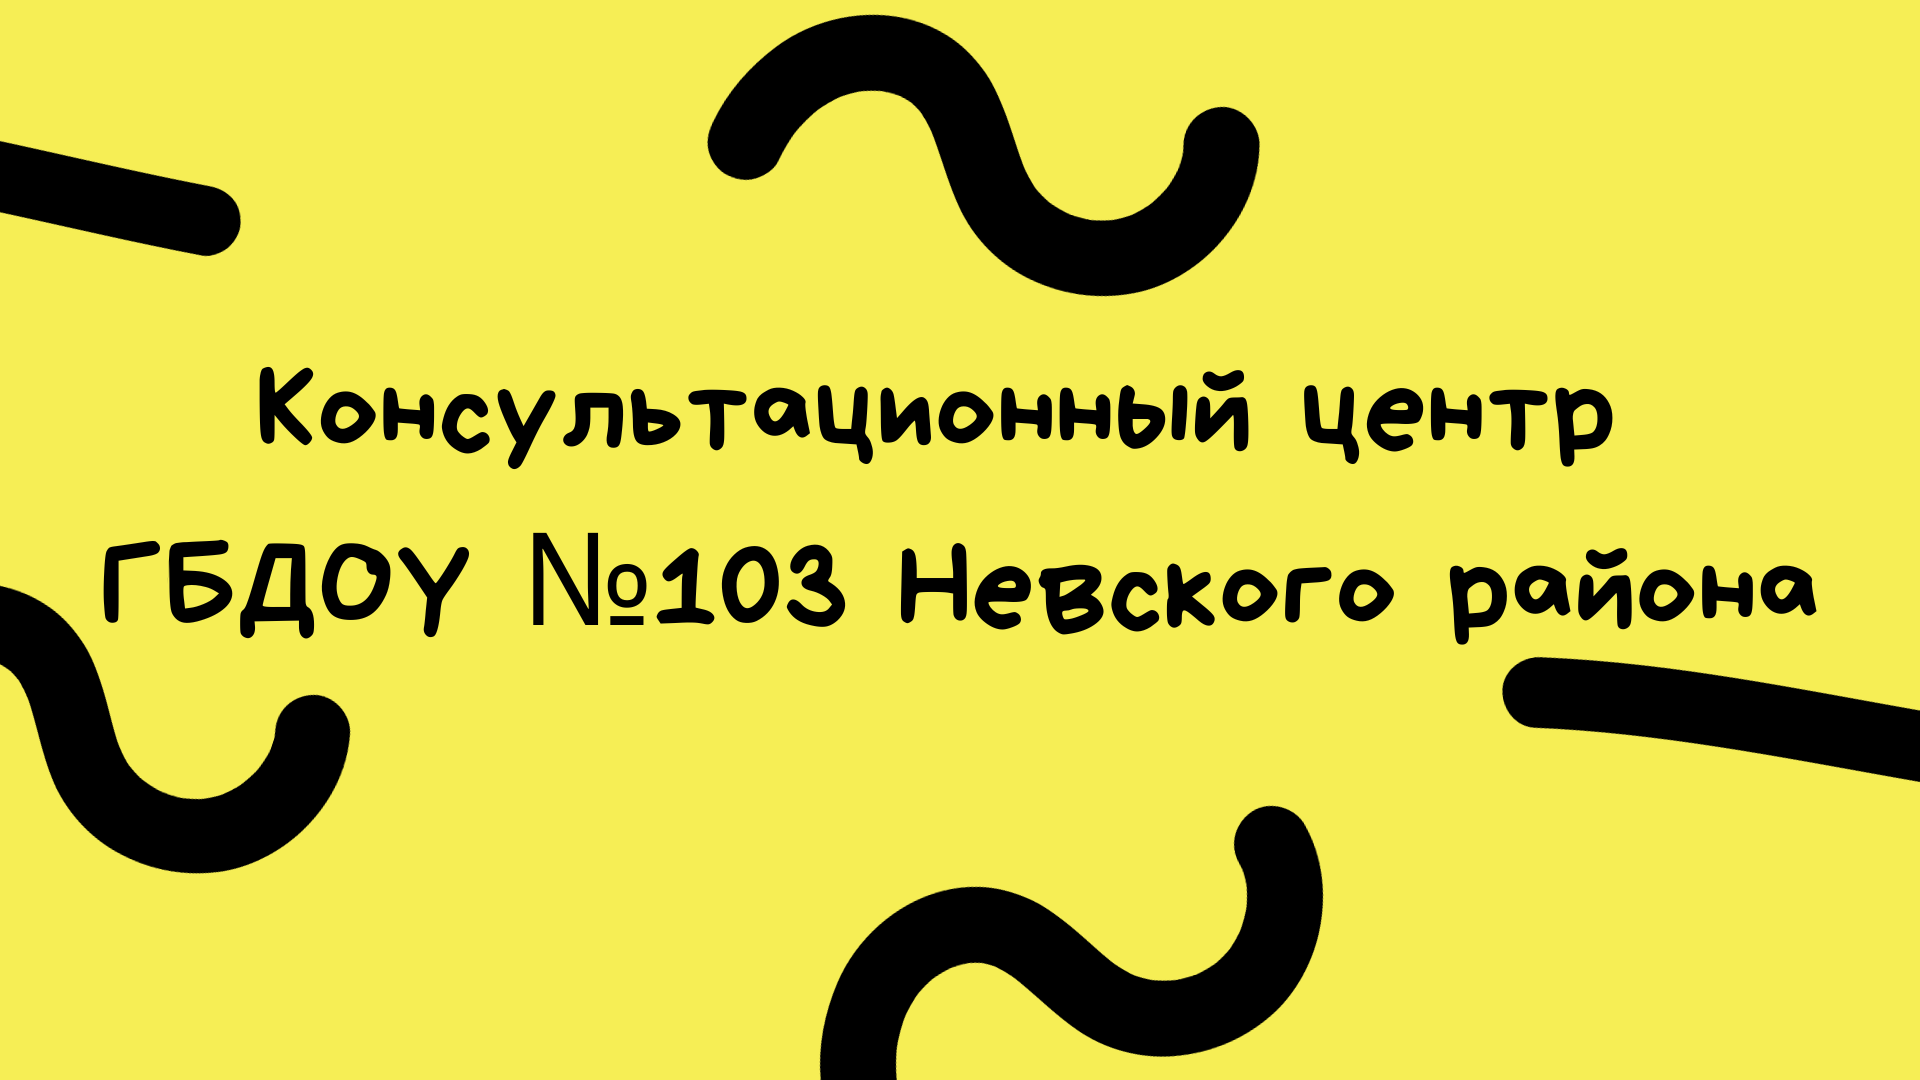 Konsultatsionny tsentr GBDOU 103 Nevskogo rayona 2